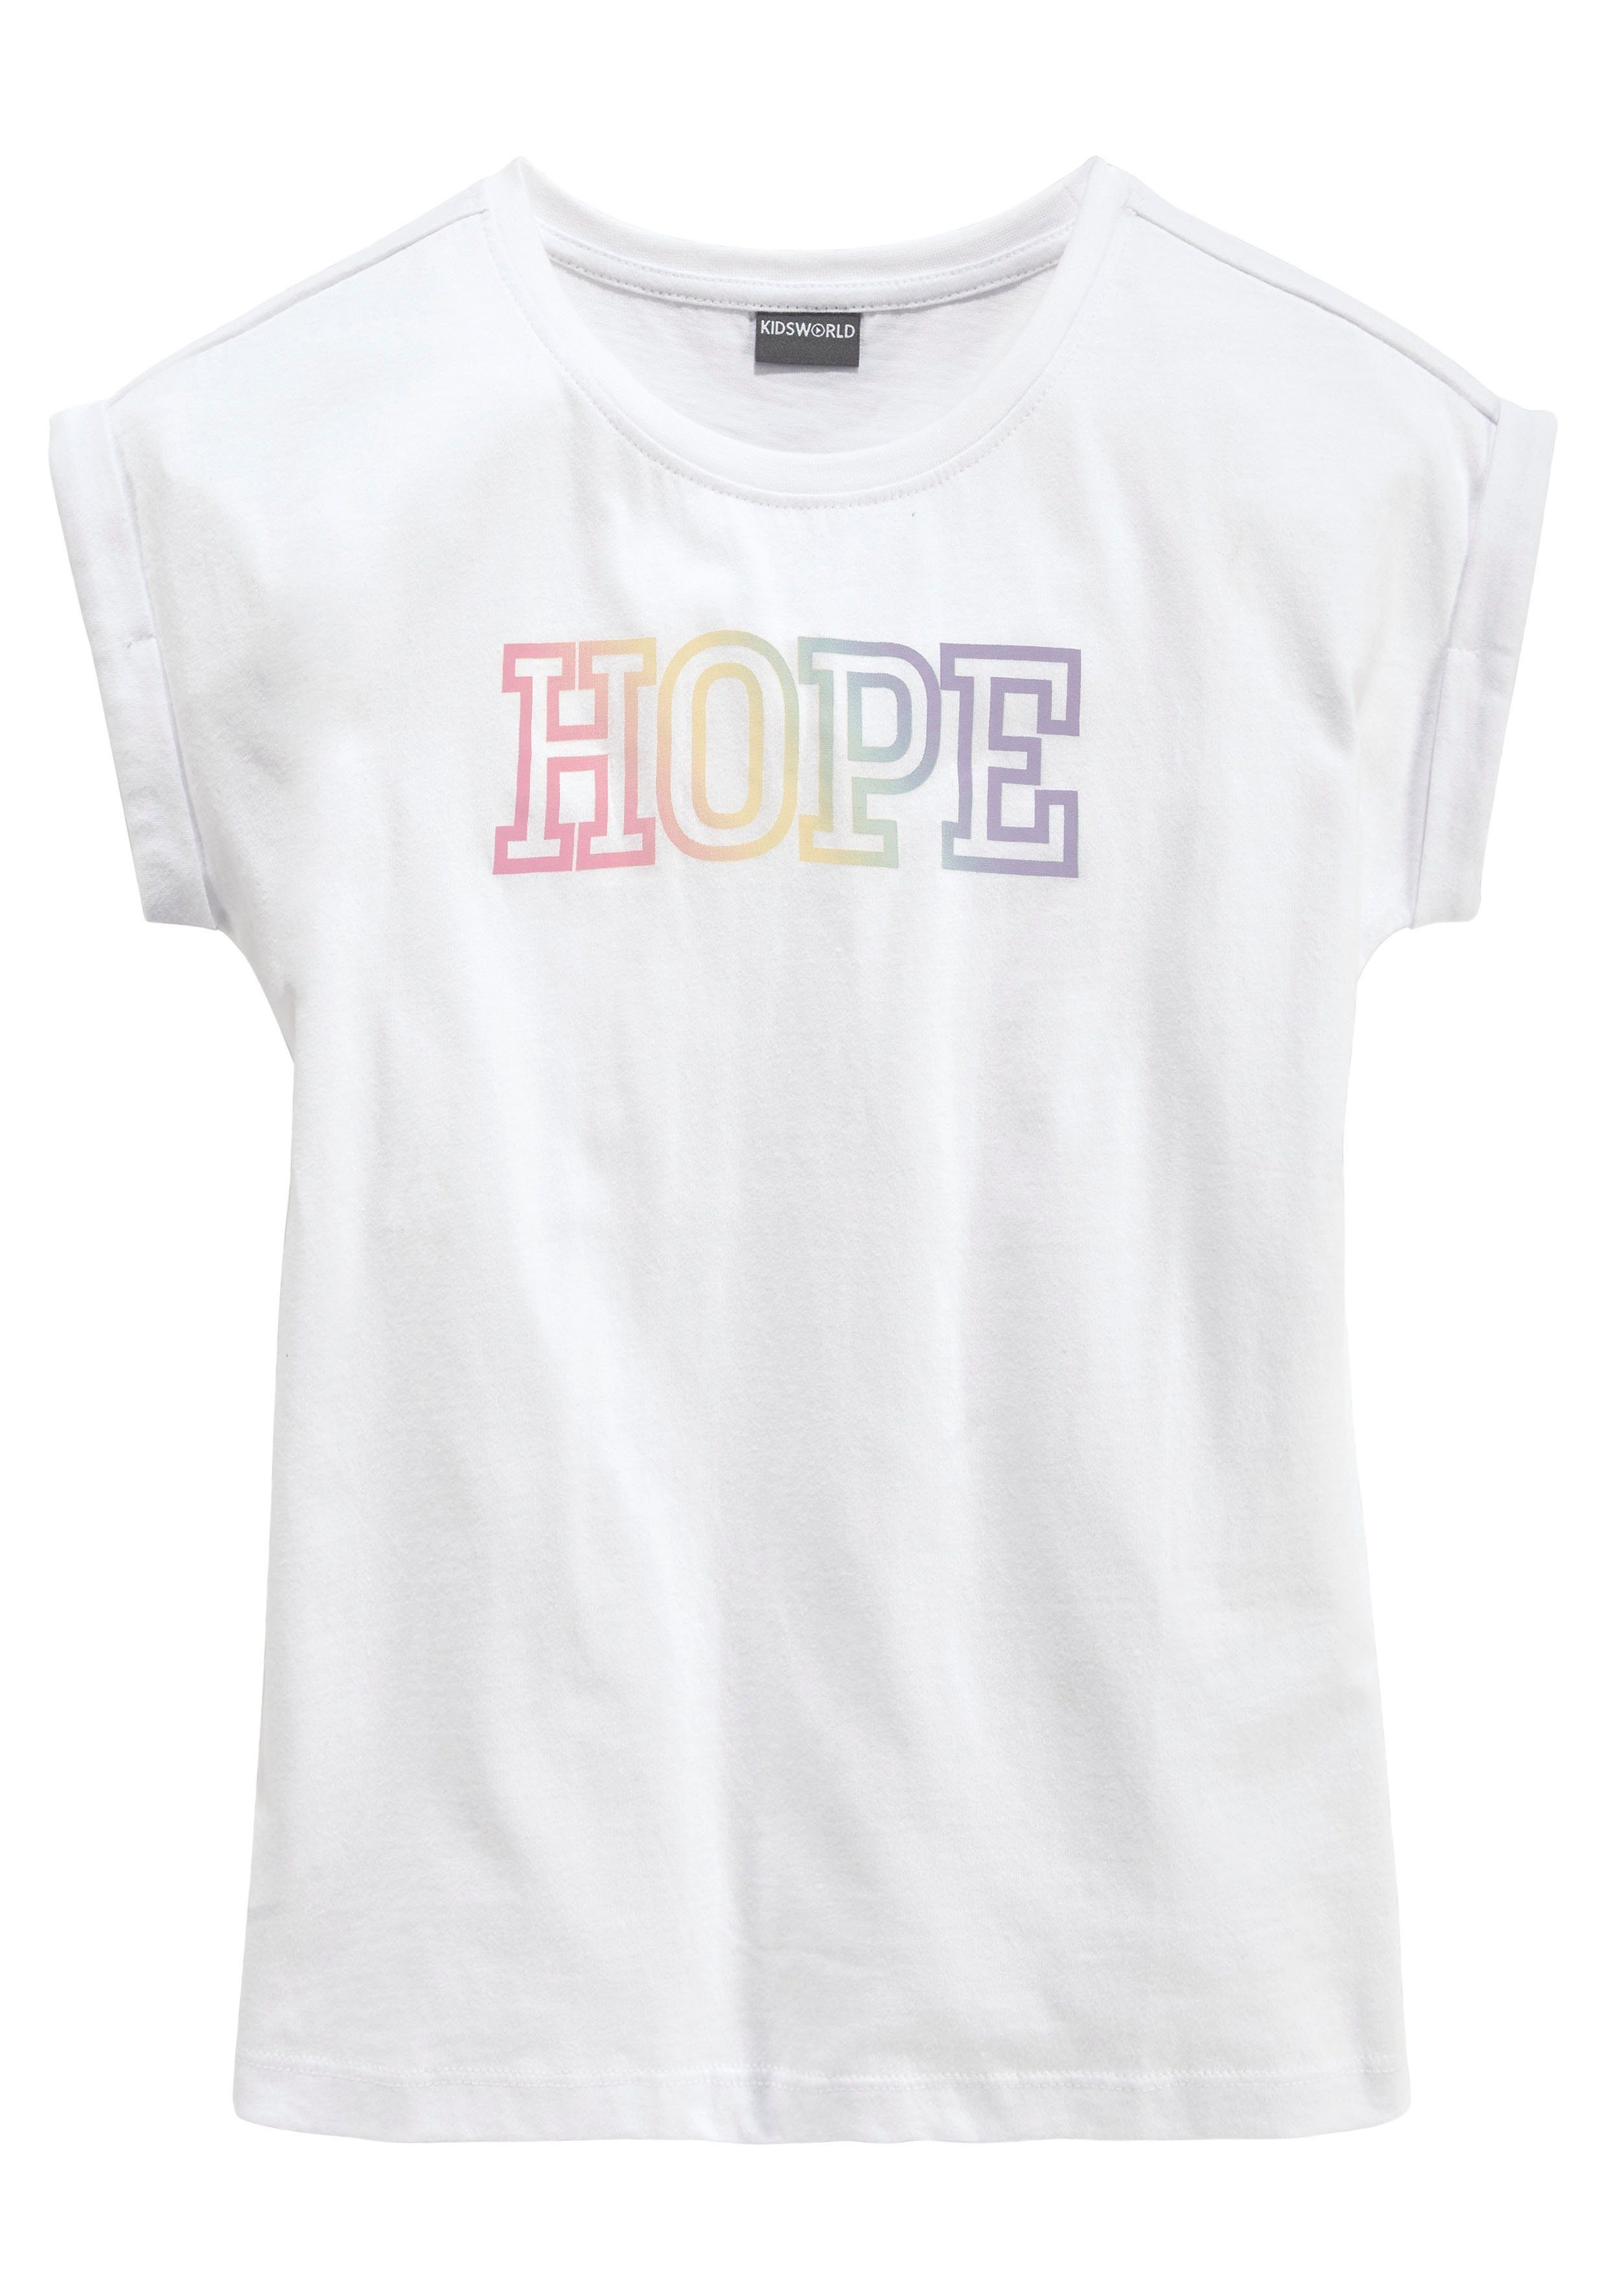 HOPE Statementdruck mit KIDSWORLD T-Shirt